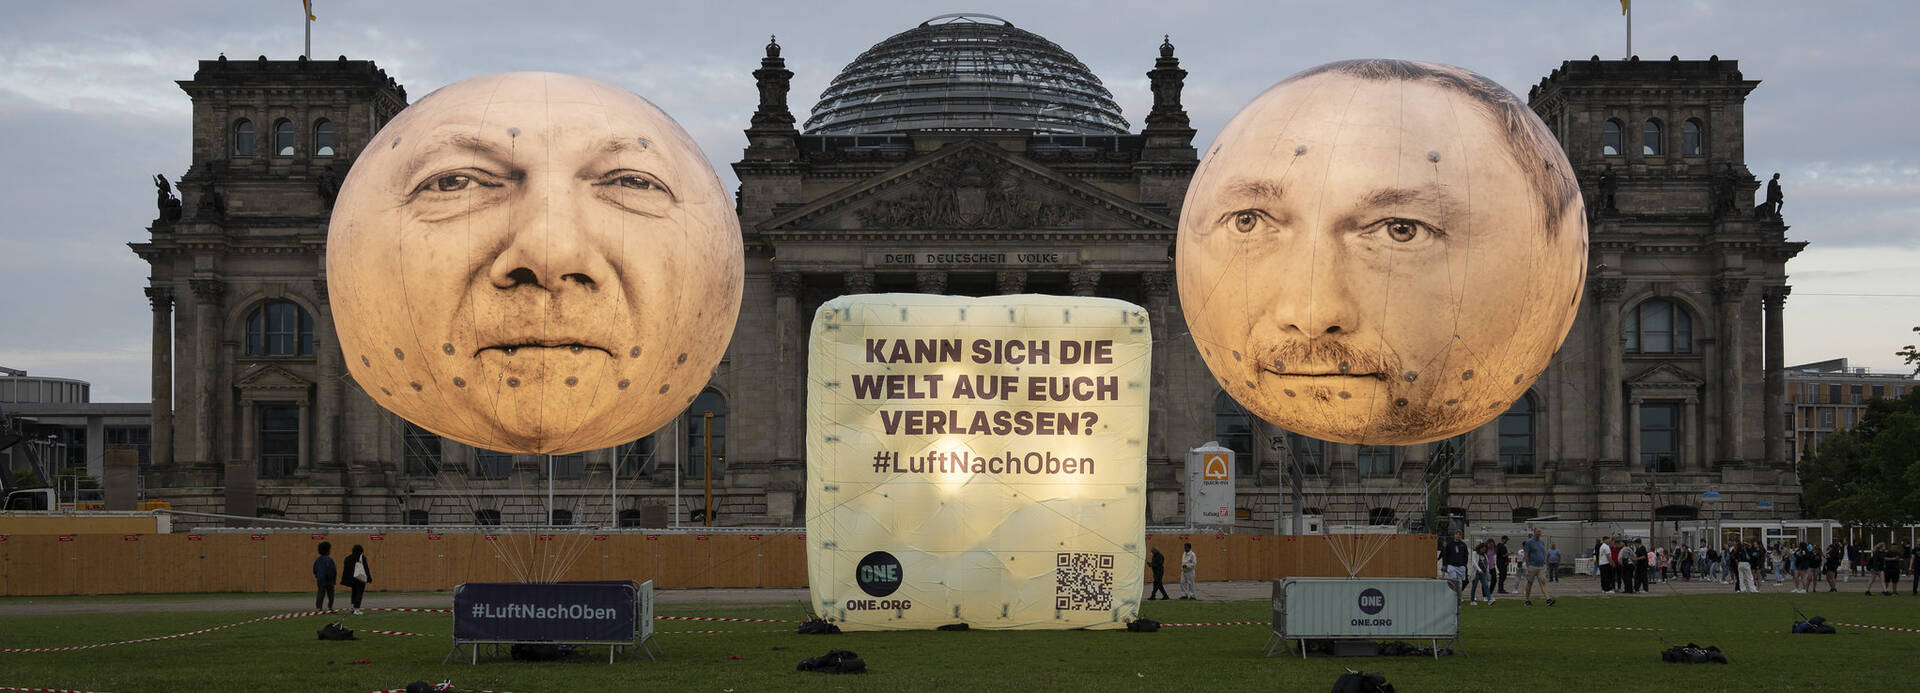 Ballons mit den Gesichtern von Olaf Scholz und Christian Lindner vor dem Reichstagsgebäude in Berlin: Kann sich die Welt auf euch verlassen? #LuftNachOben